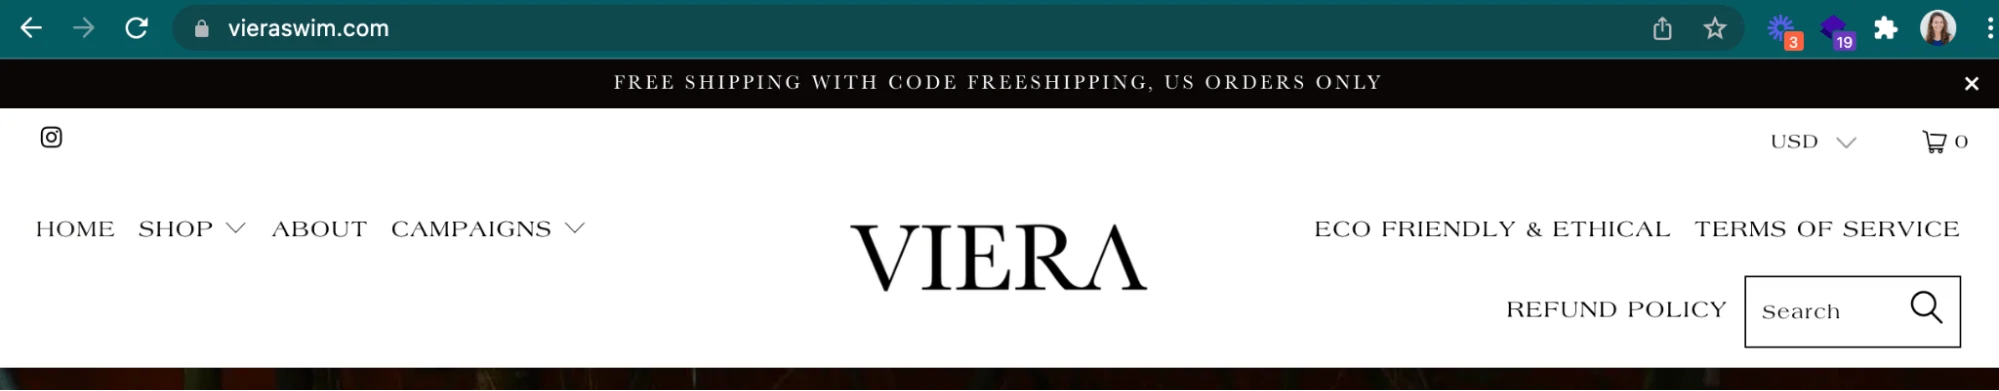 泳装品牌 Viera 用 vieraswim.com 作为其 URL